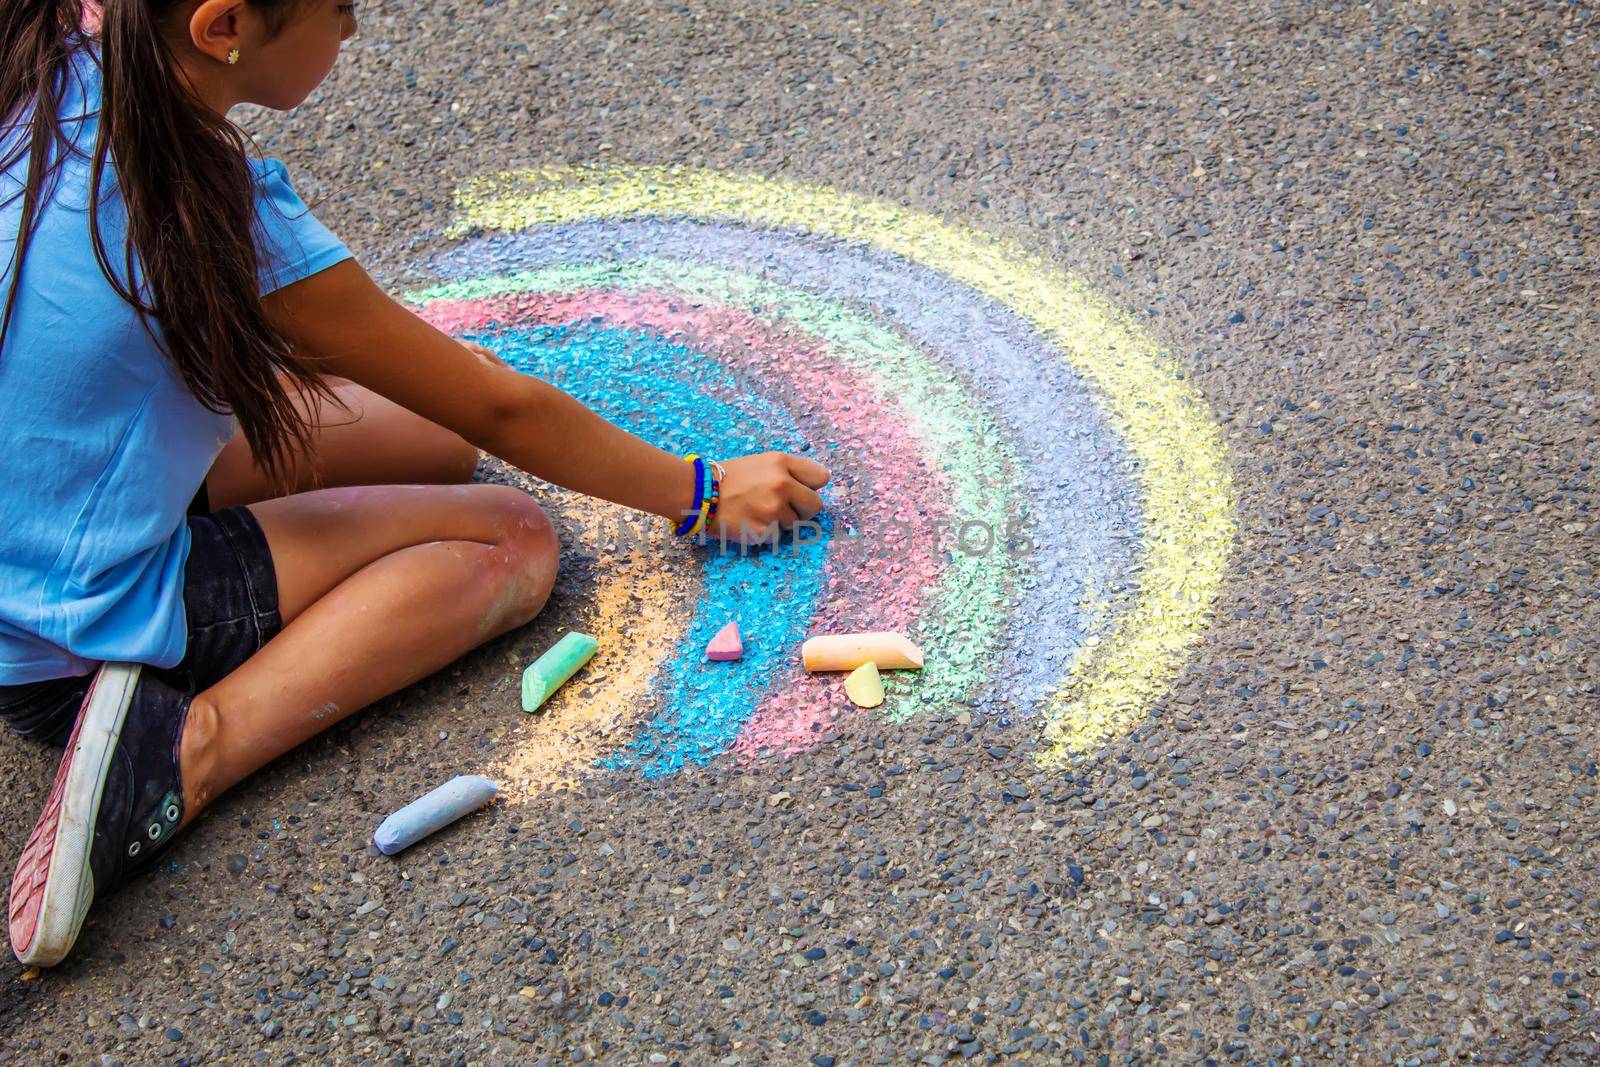 A child draws a rainbow on the asphalt. Selective focus. kid.